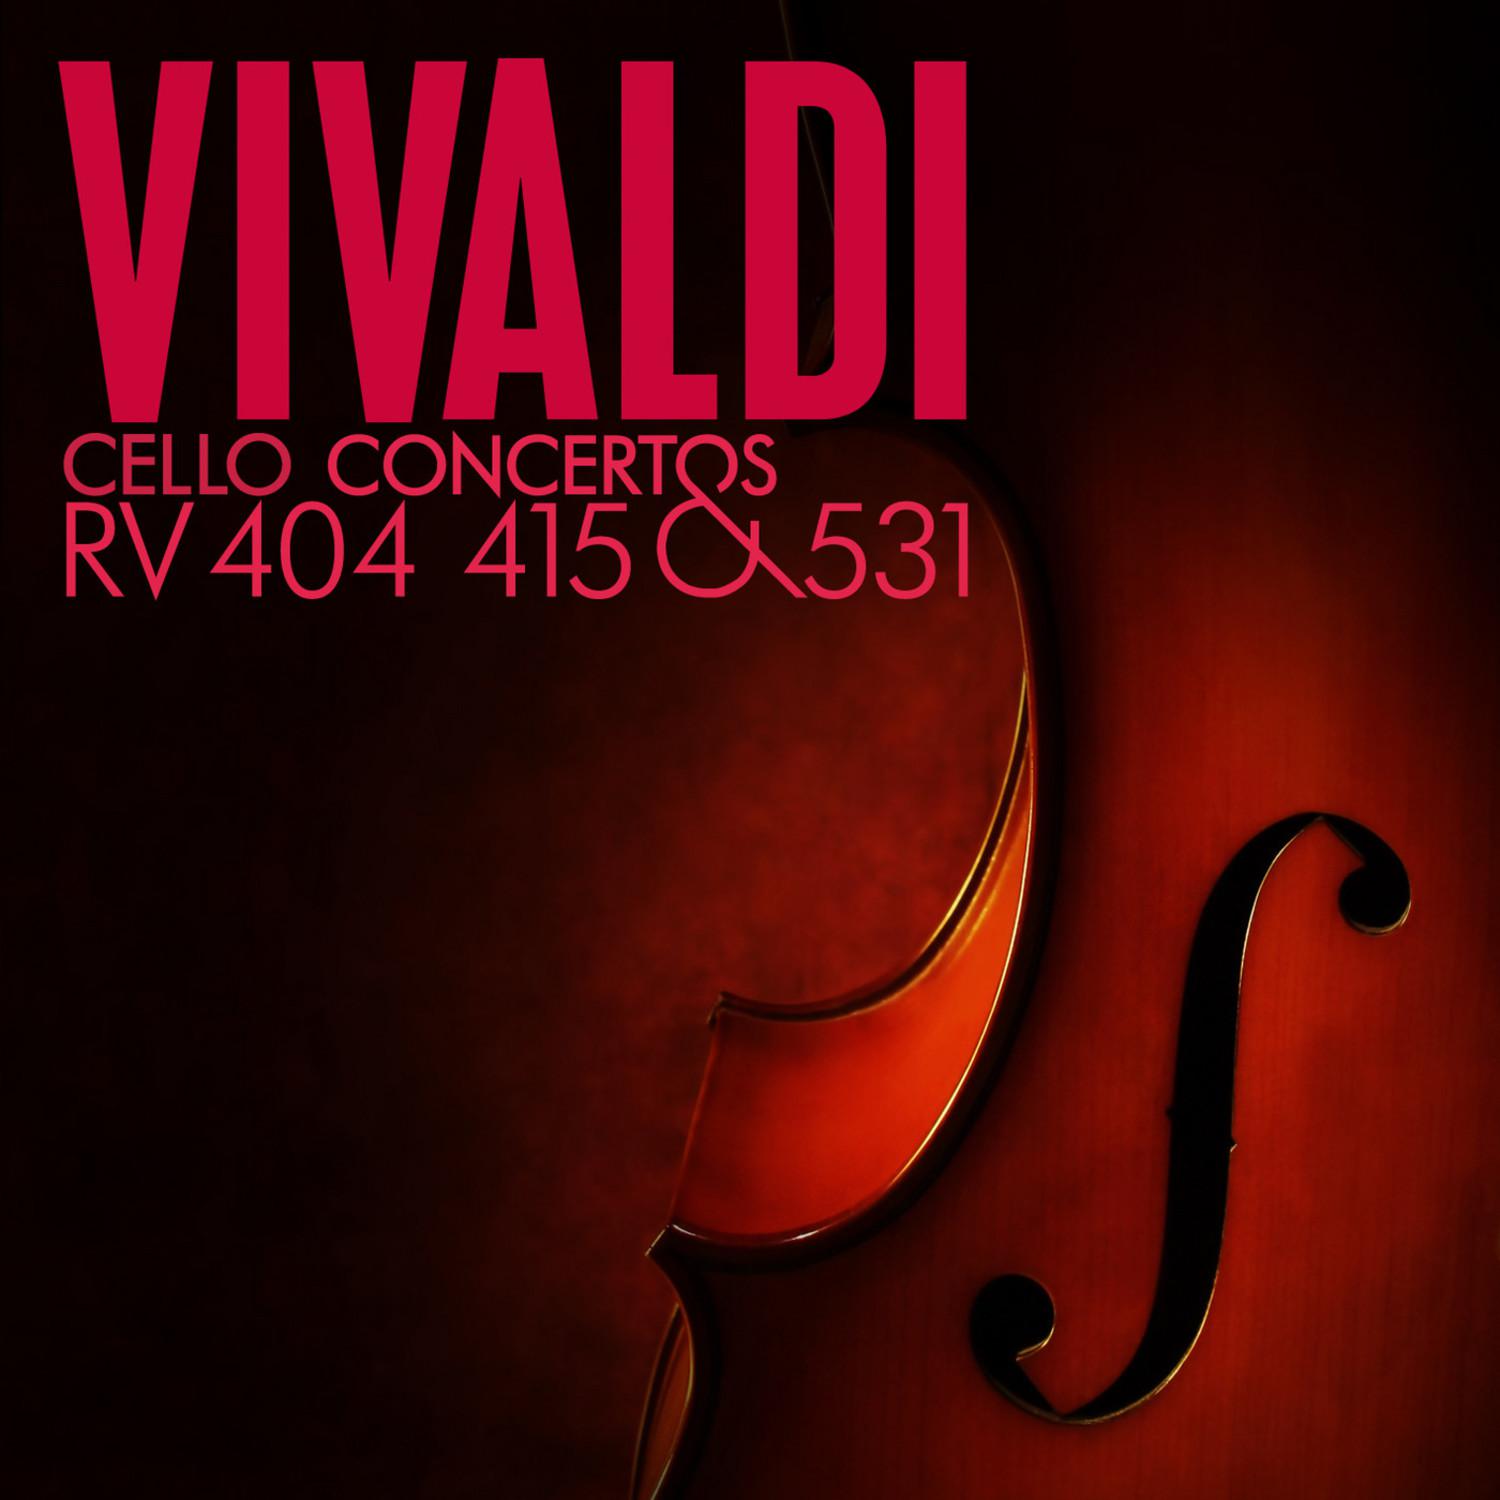 Cello Concerto in D Major, RV 404: IV. Allegro vivace